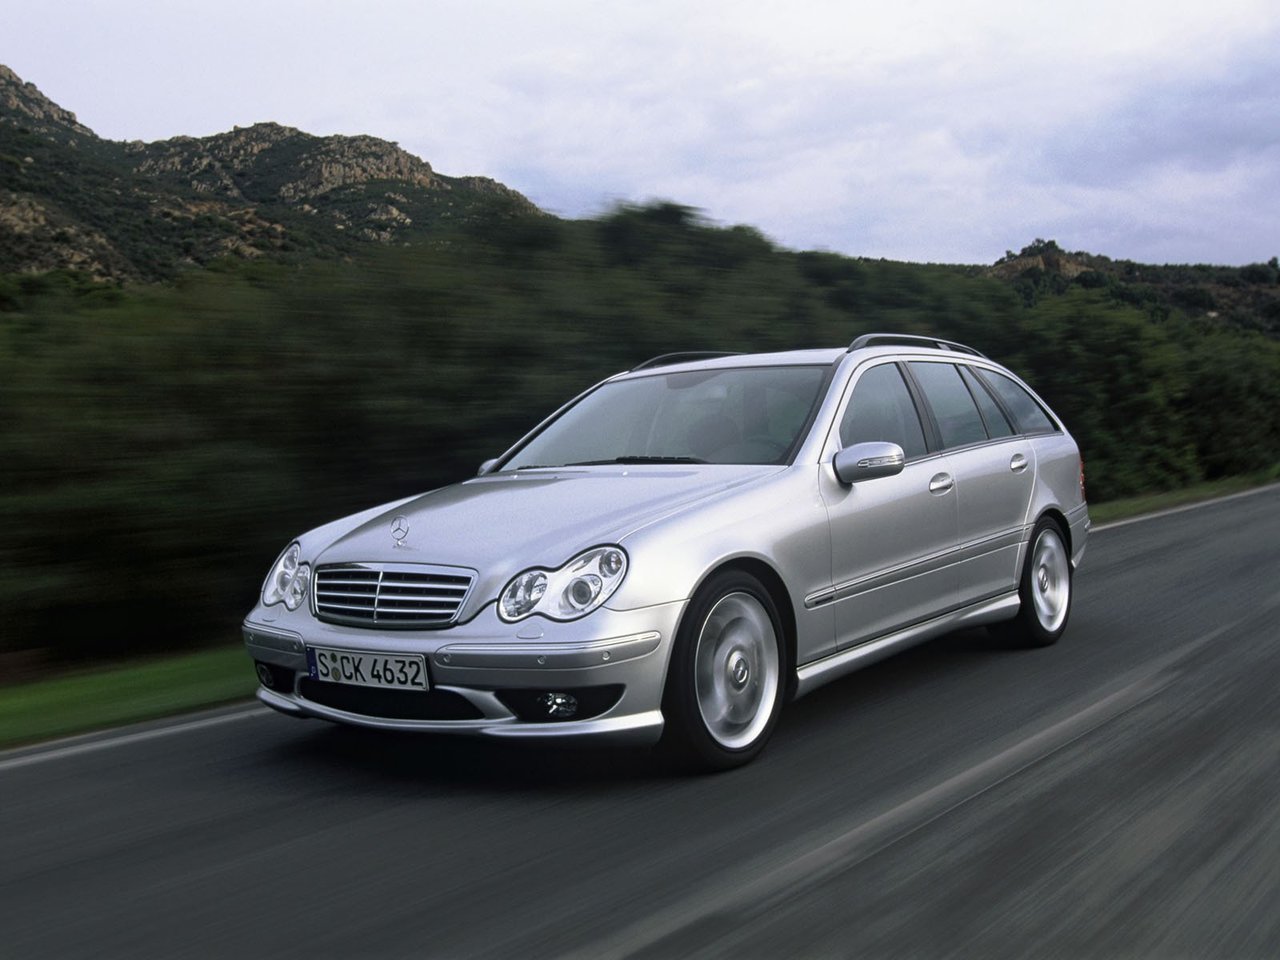 Расход газа одной комплектации универсала пять дверей Mercedes-Benz C-klasse AMG. Разница стоимости заправки газом и бензином. Автономный пробег до и после установки ГБО.